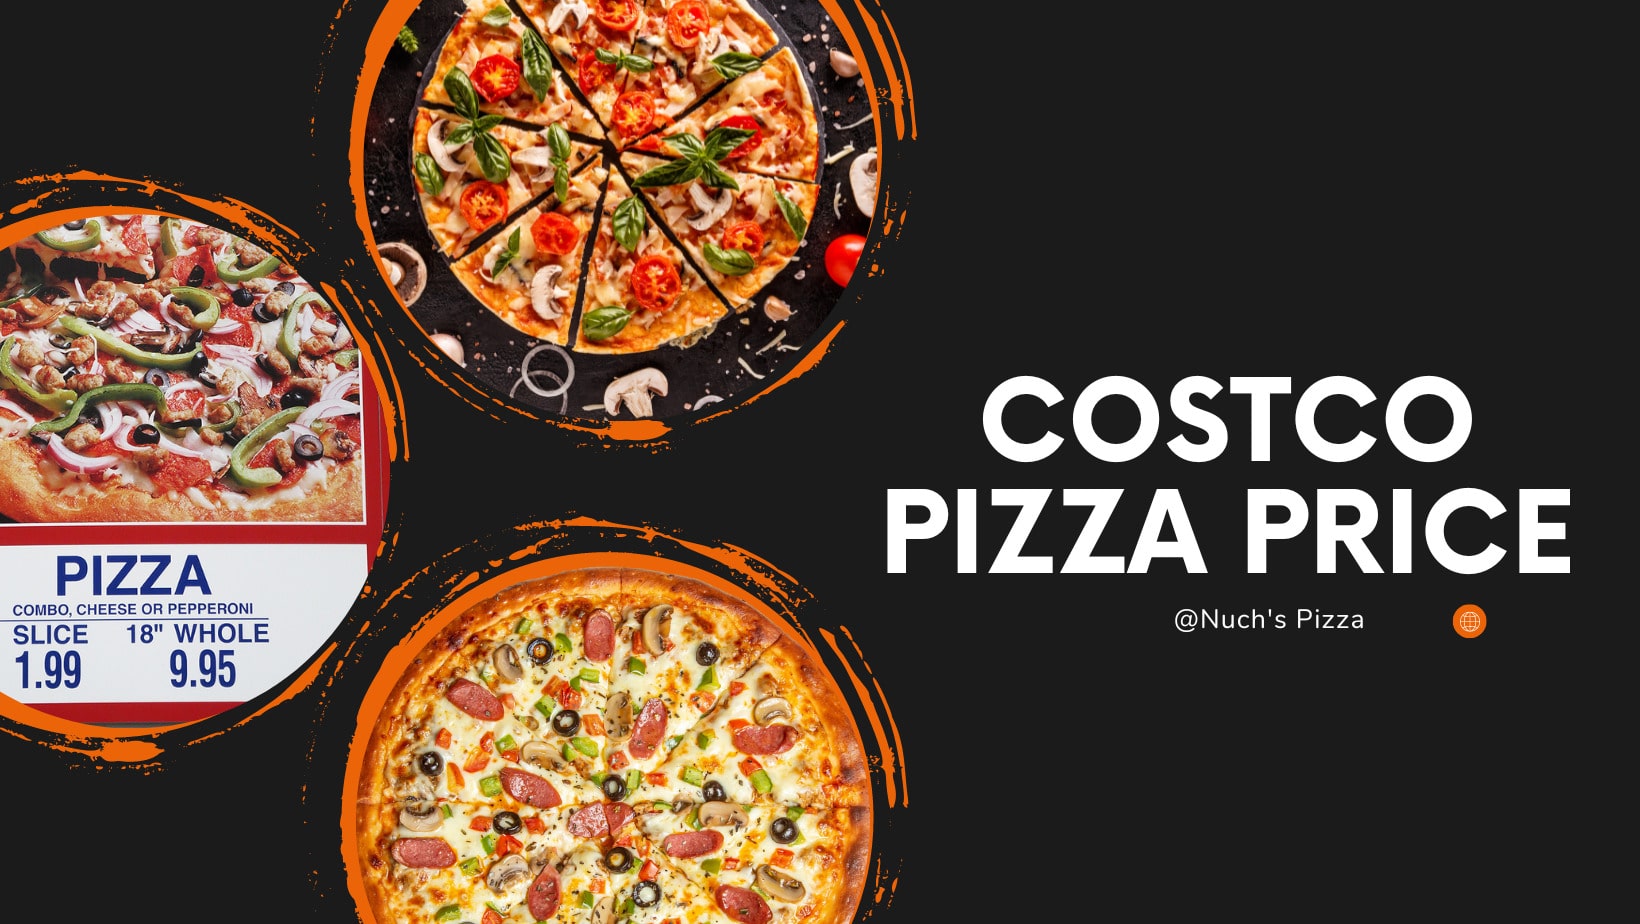 Costco pizza prices